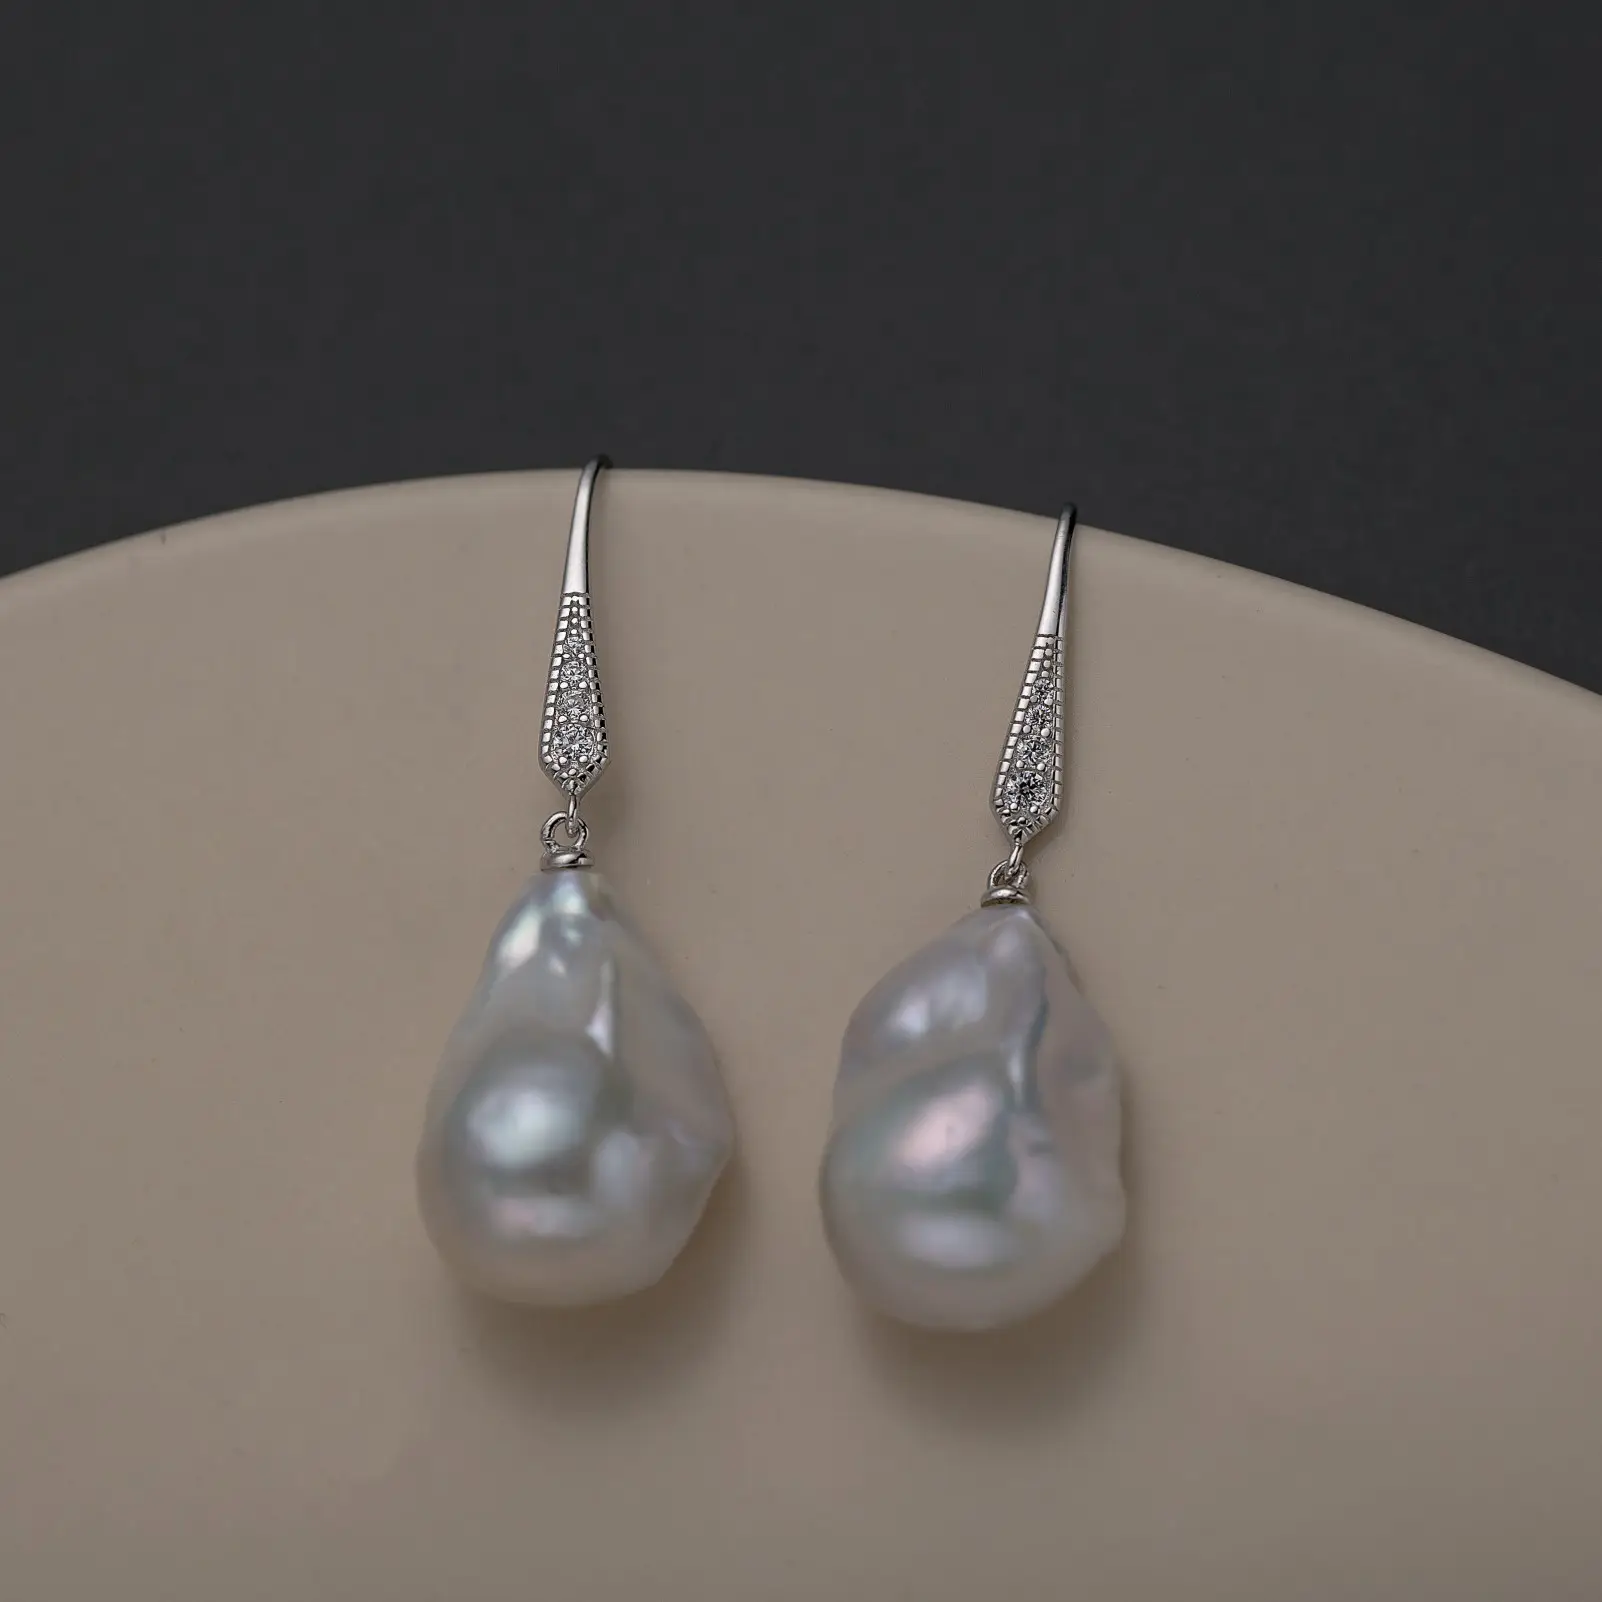 Gran oferta, joyería fina, pendientes de perlas barrocas de agua dulce con 925 Plata, joyería elegante blanca Natural